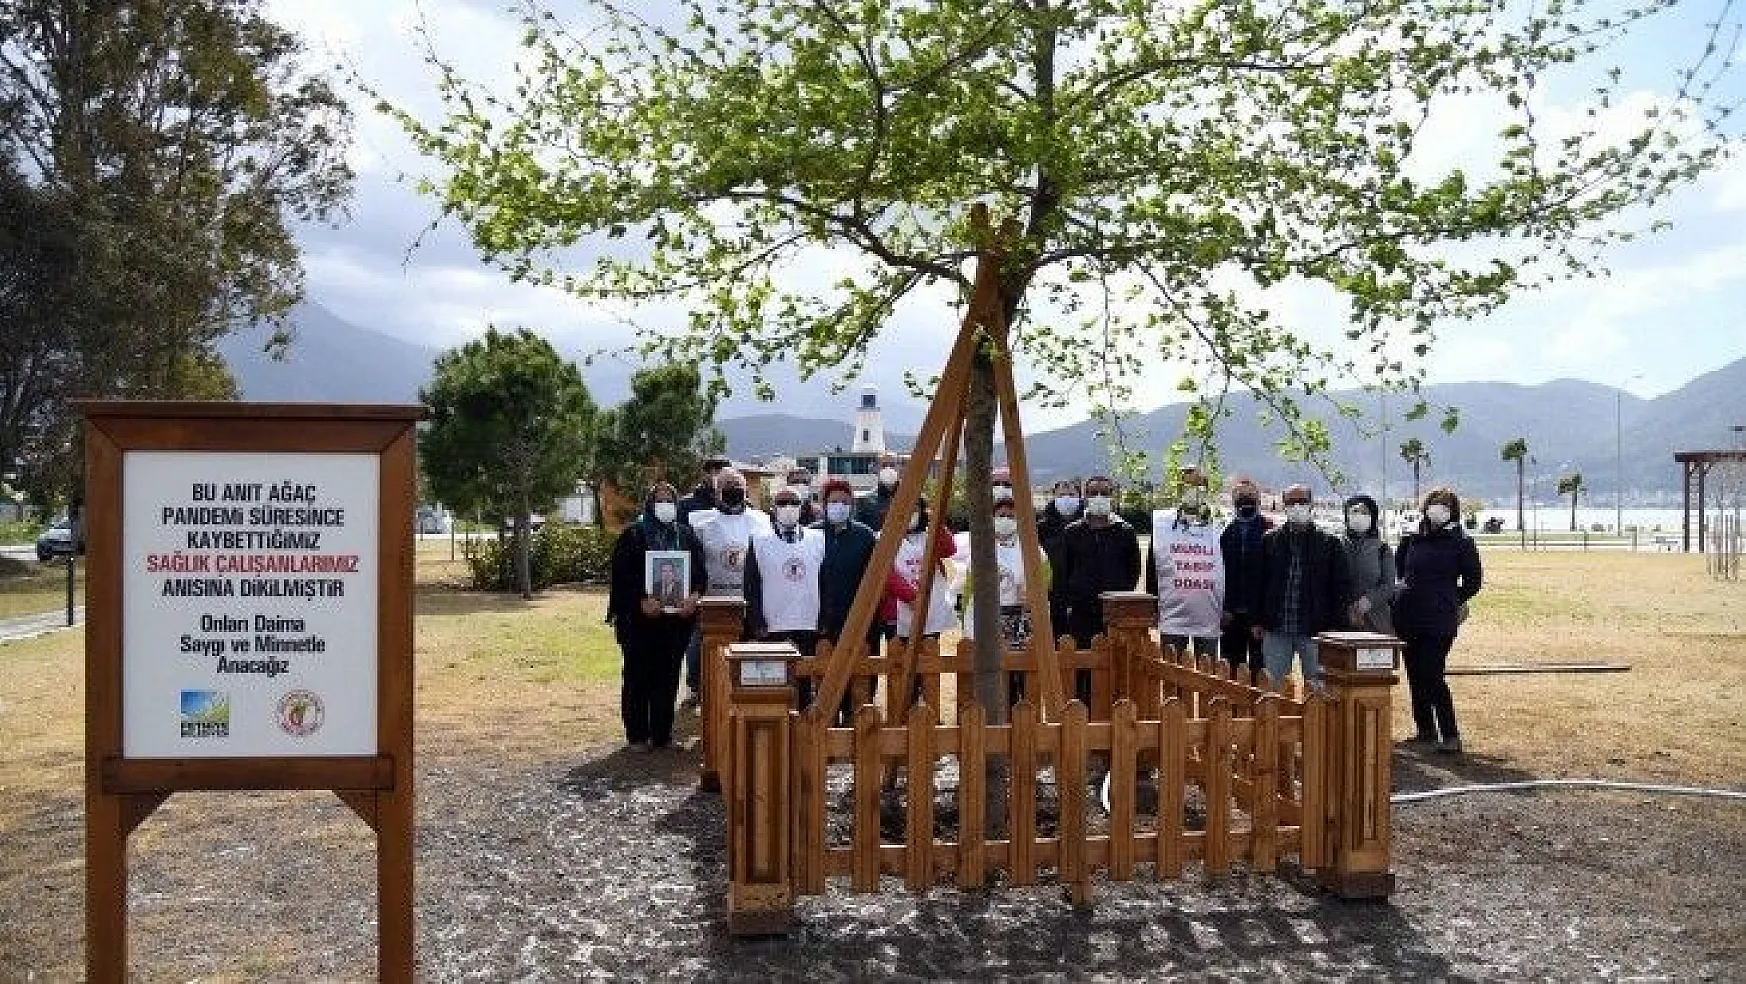 Sağlık Çalışanları için Anıt Ağaç dikildi